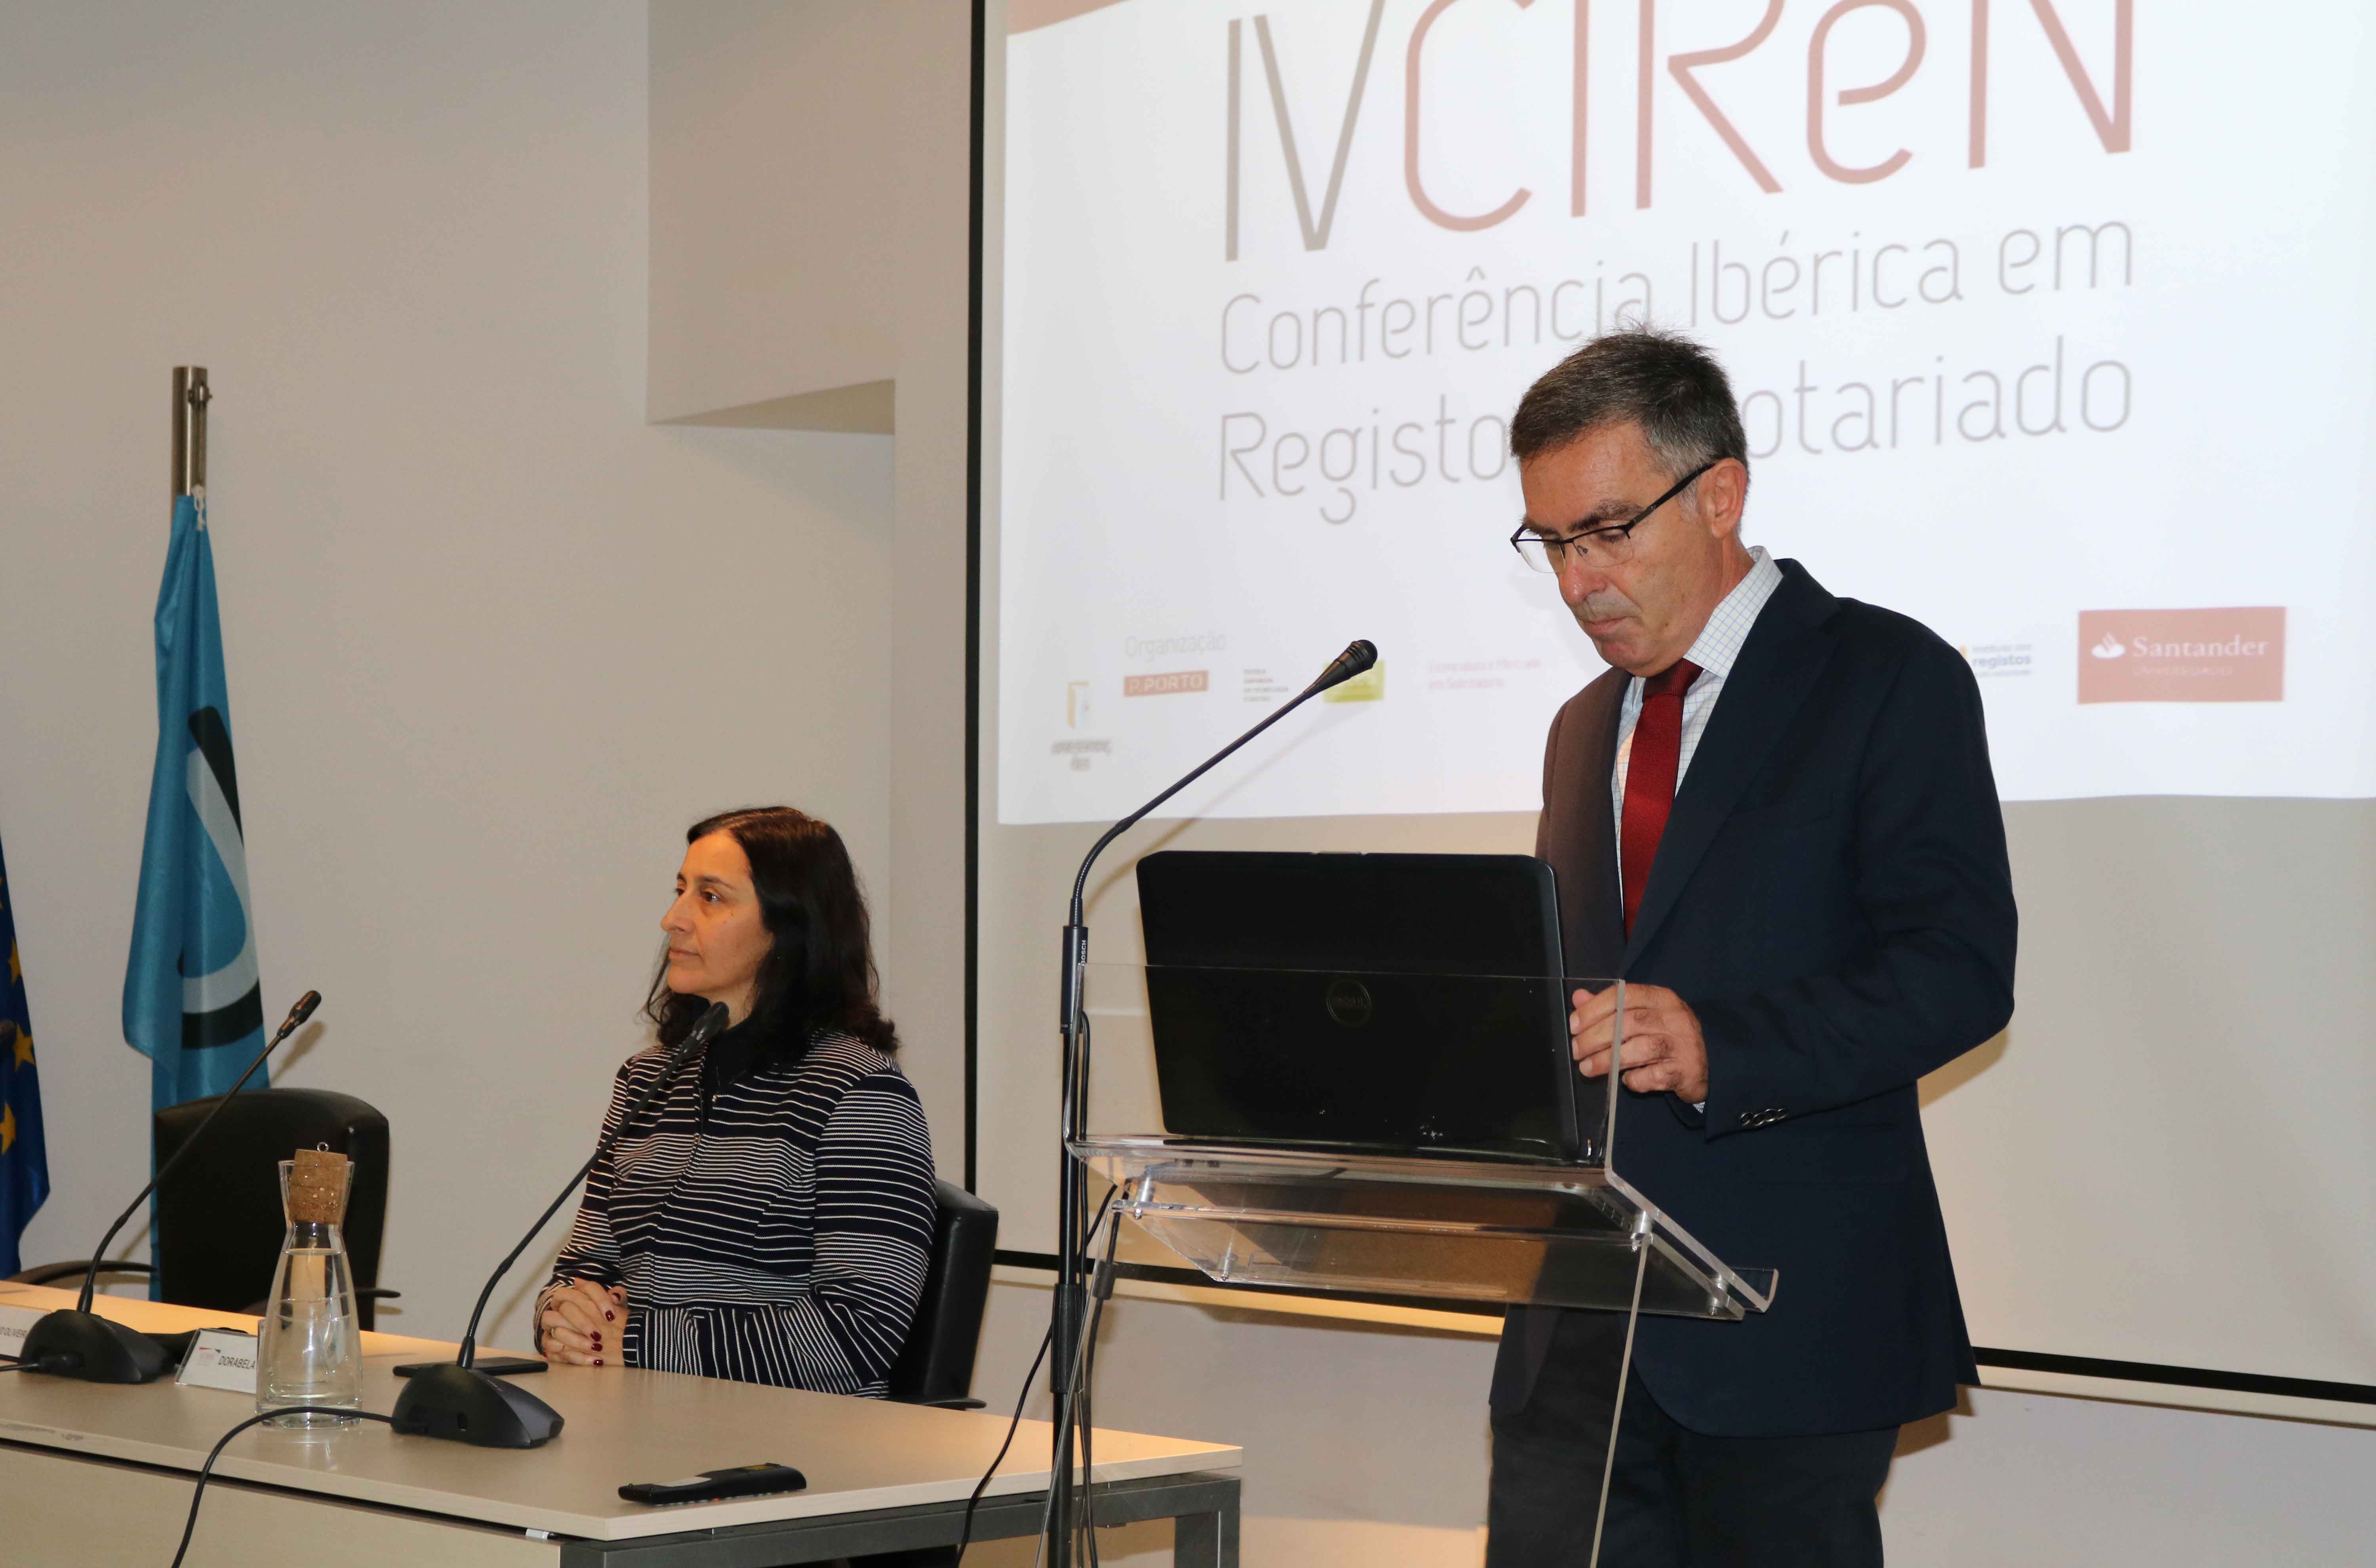 IV Conferência Ibérica em Registos e Notariado (CIReN)